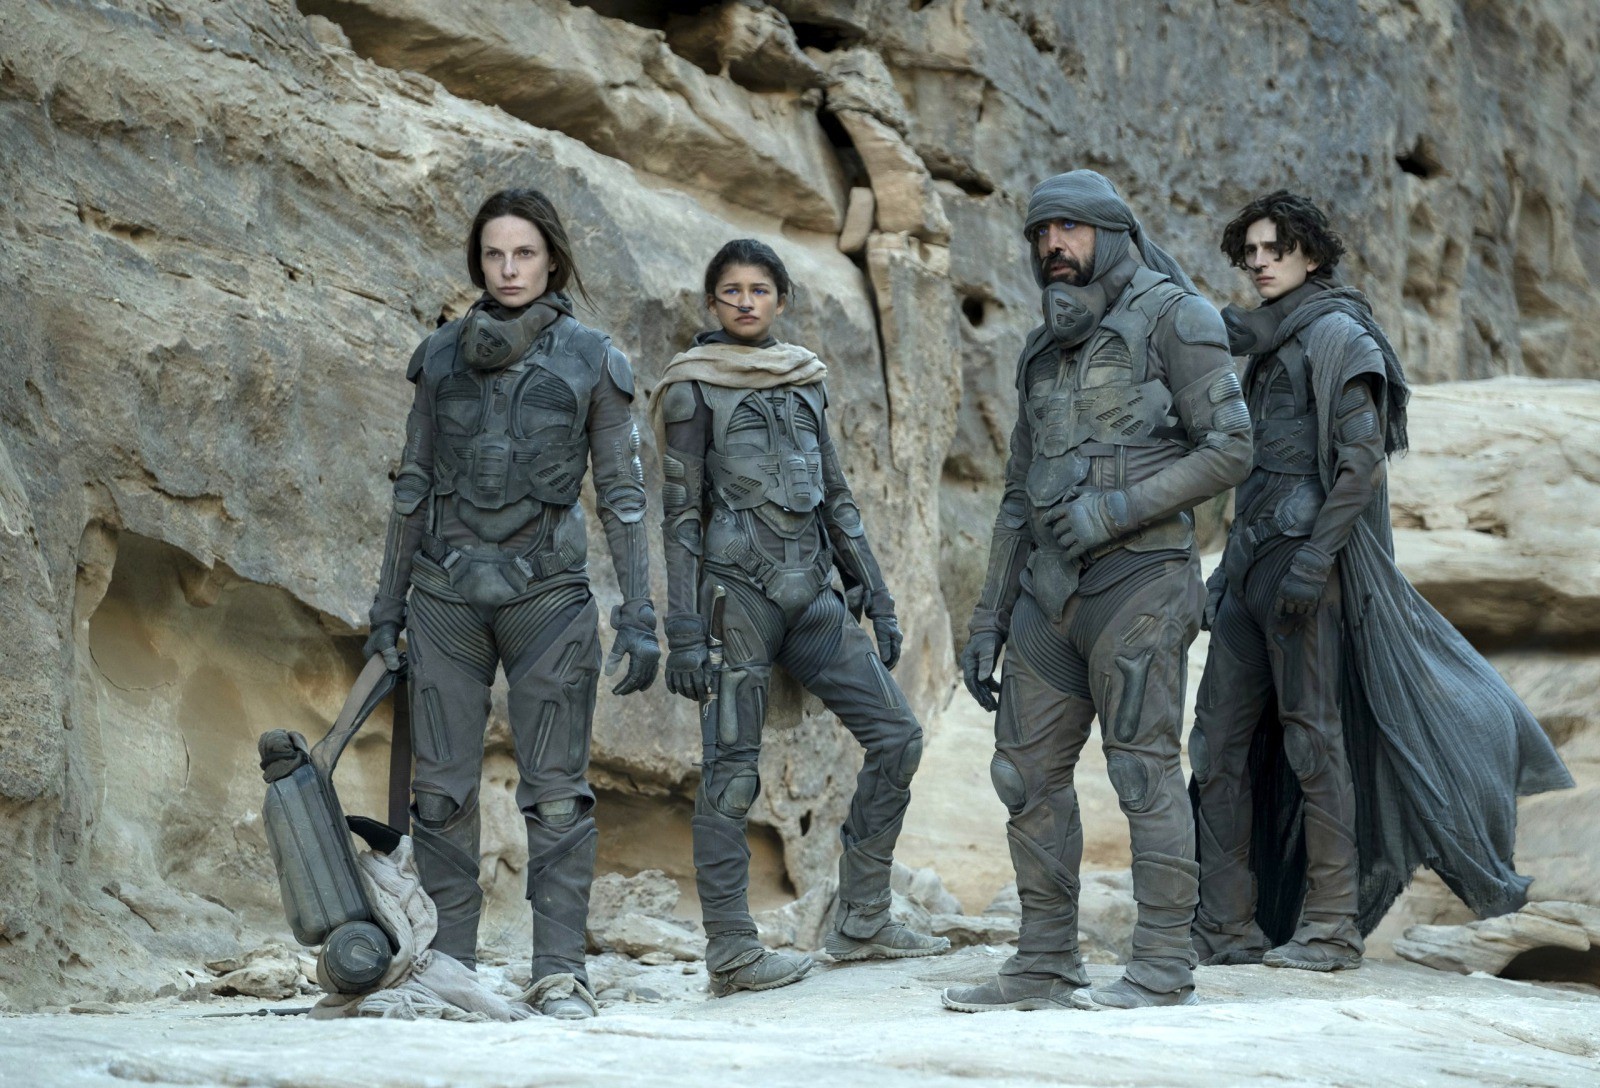 El reparto de Dune está liderado por Timothée Chalamet, al que acompañan Rebecca Ferguson, Zendaya o Javier Bardem